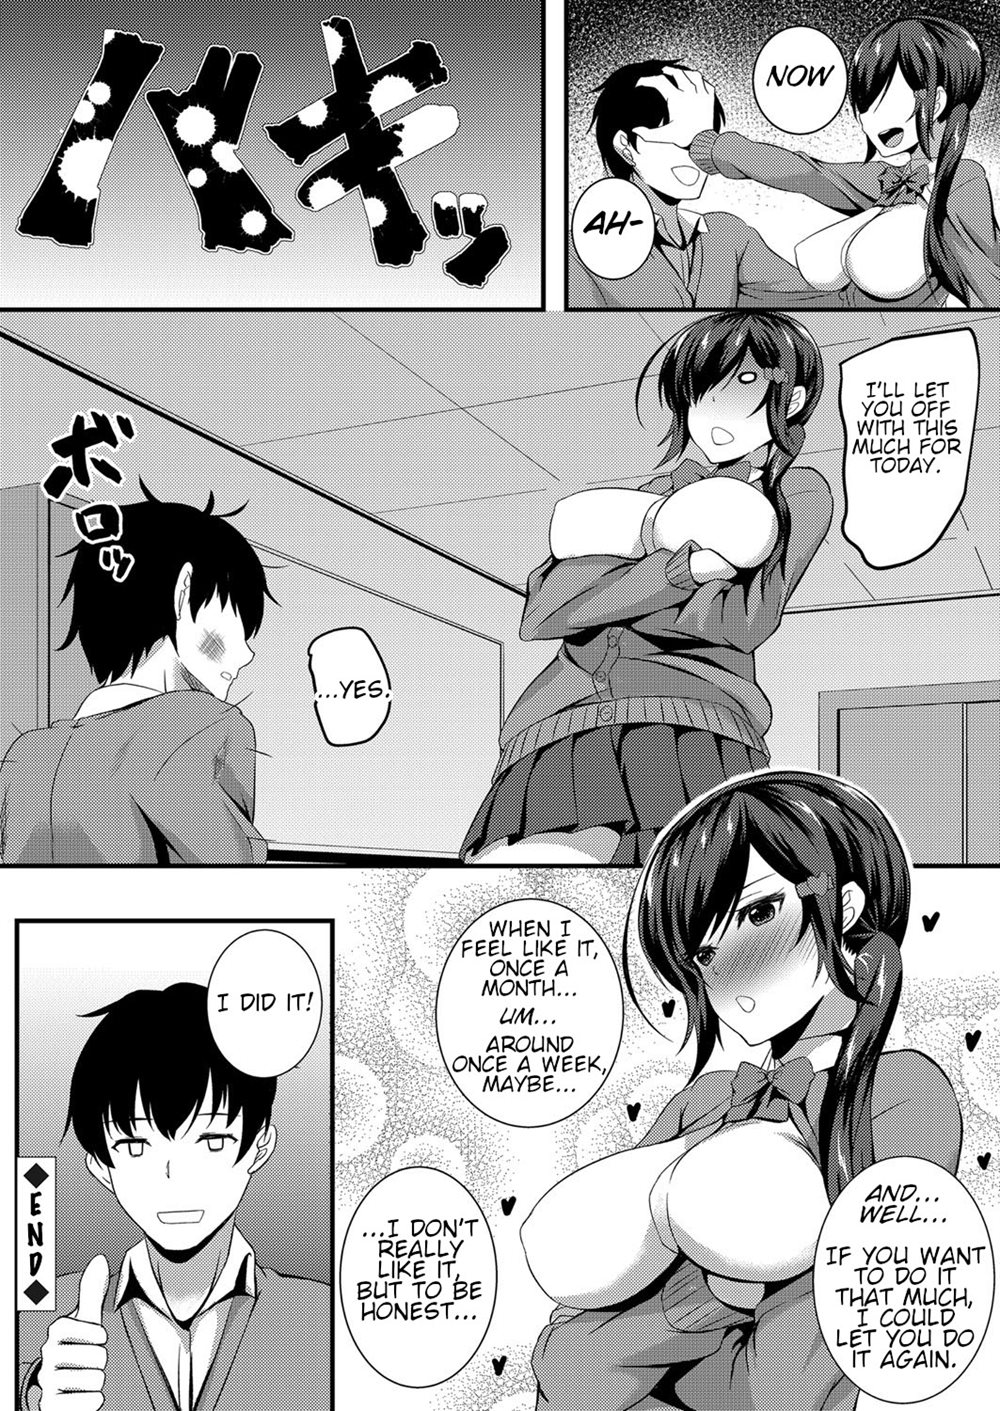 Anime anal manga